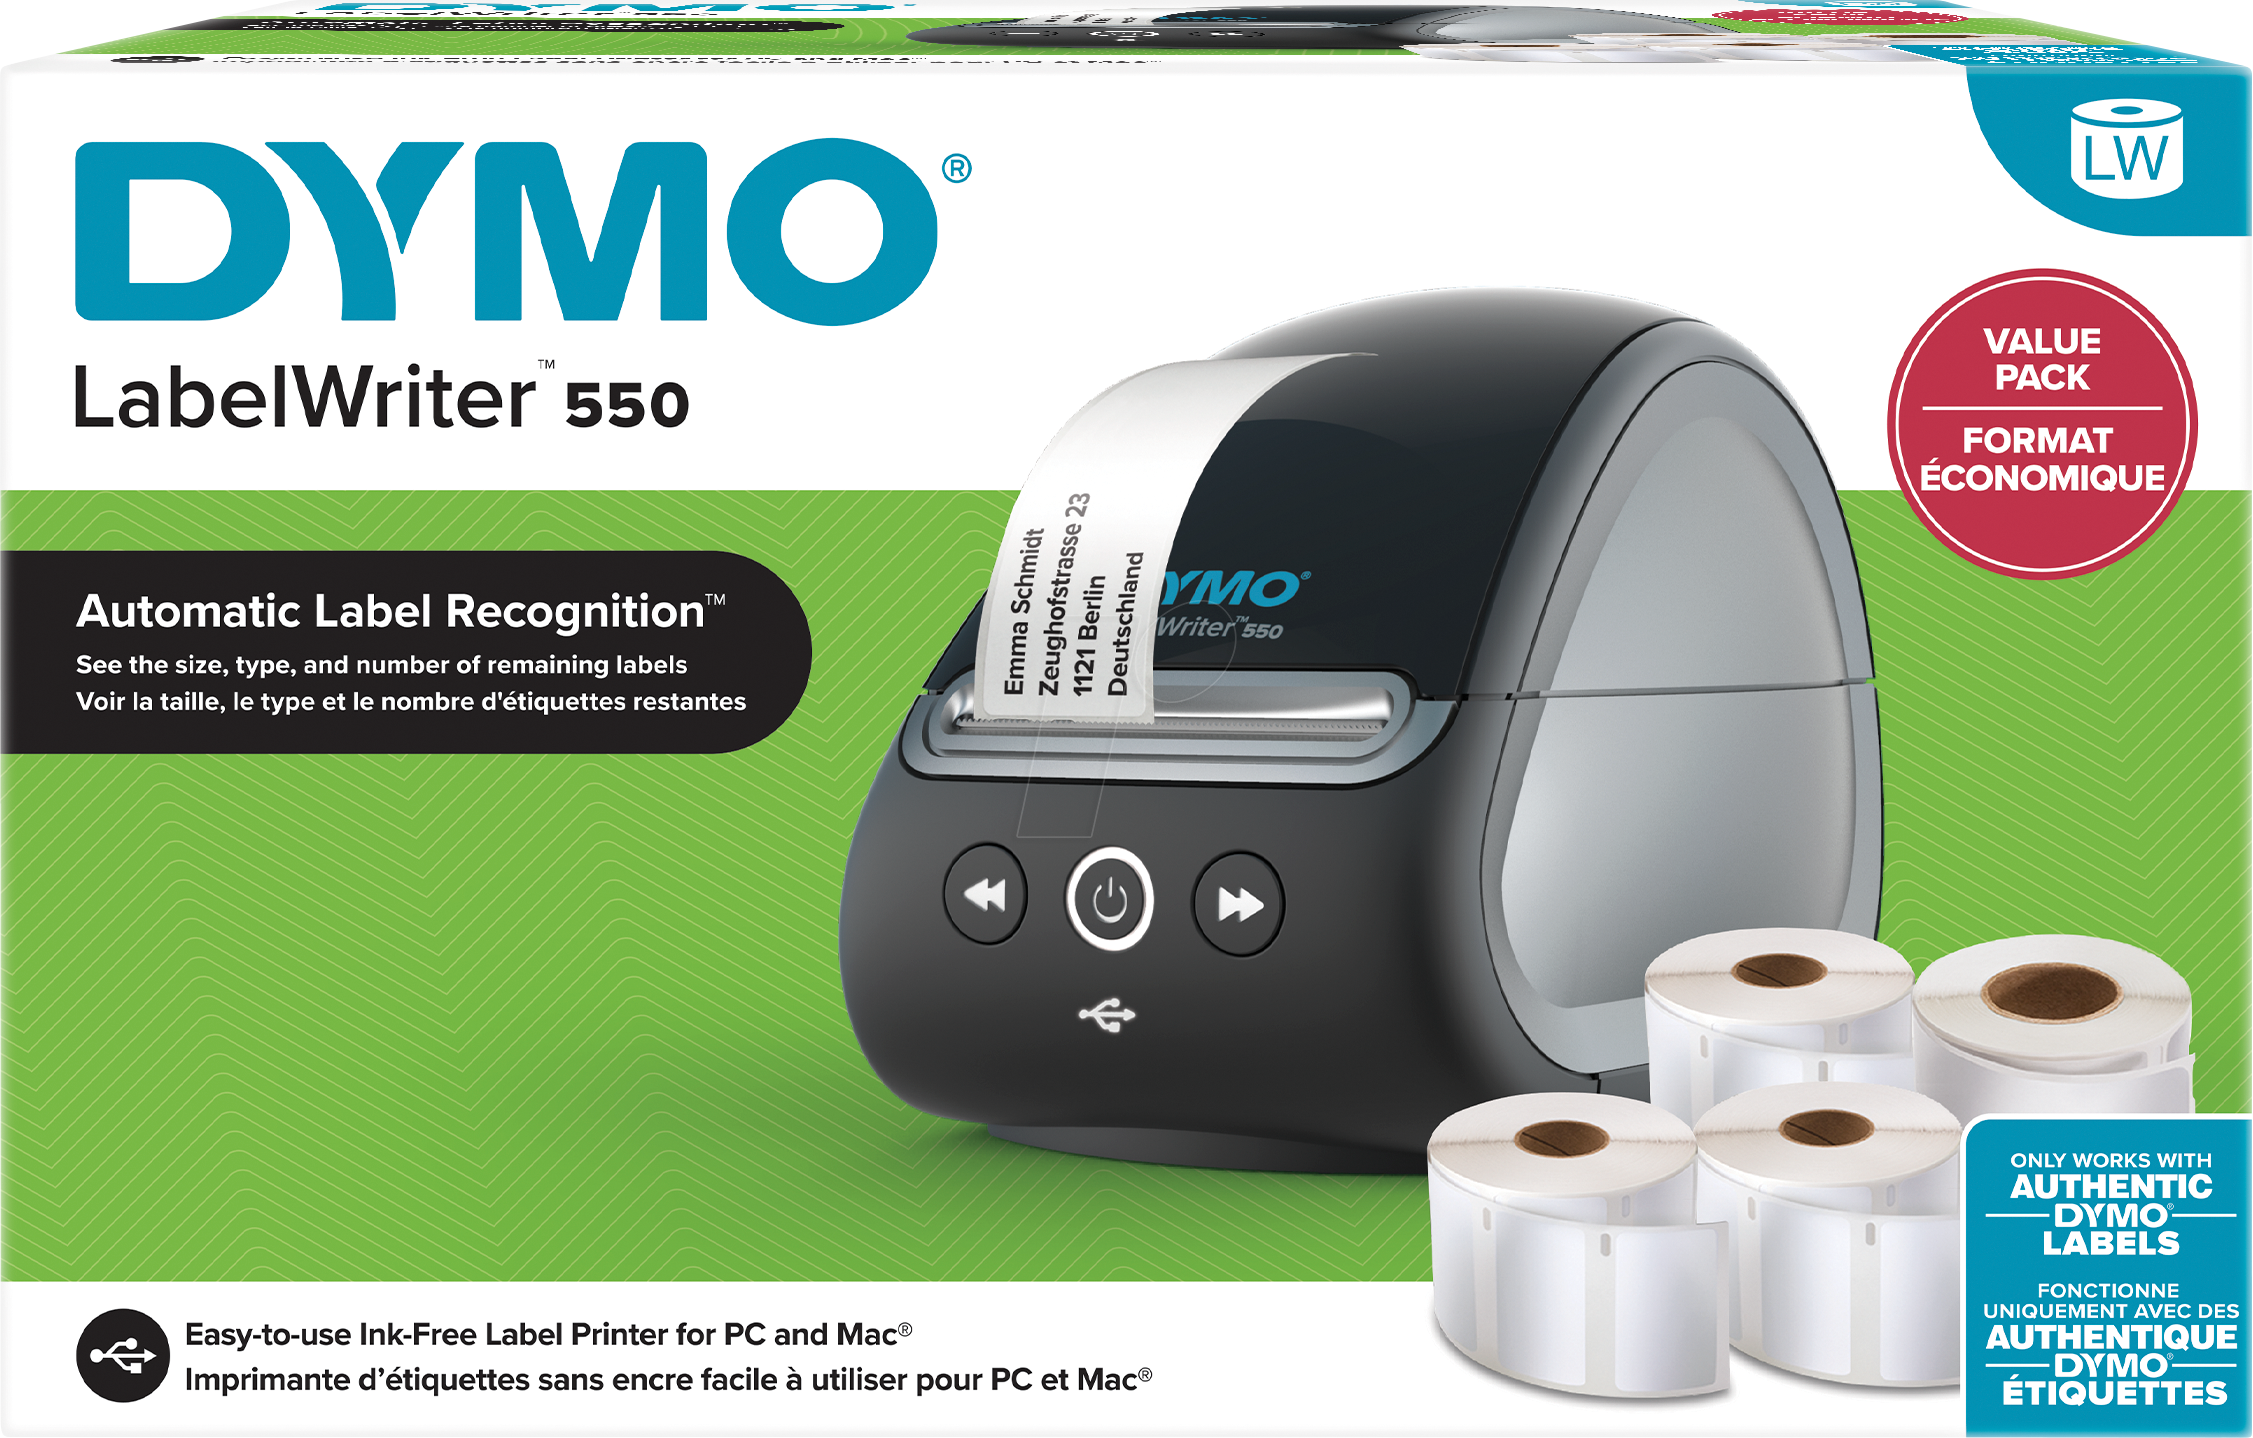 Dymo LabelWriter 550 Value Pack mit 4 LW-Rollen